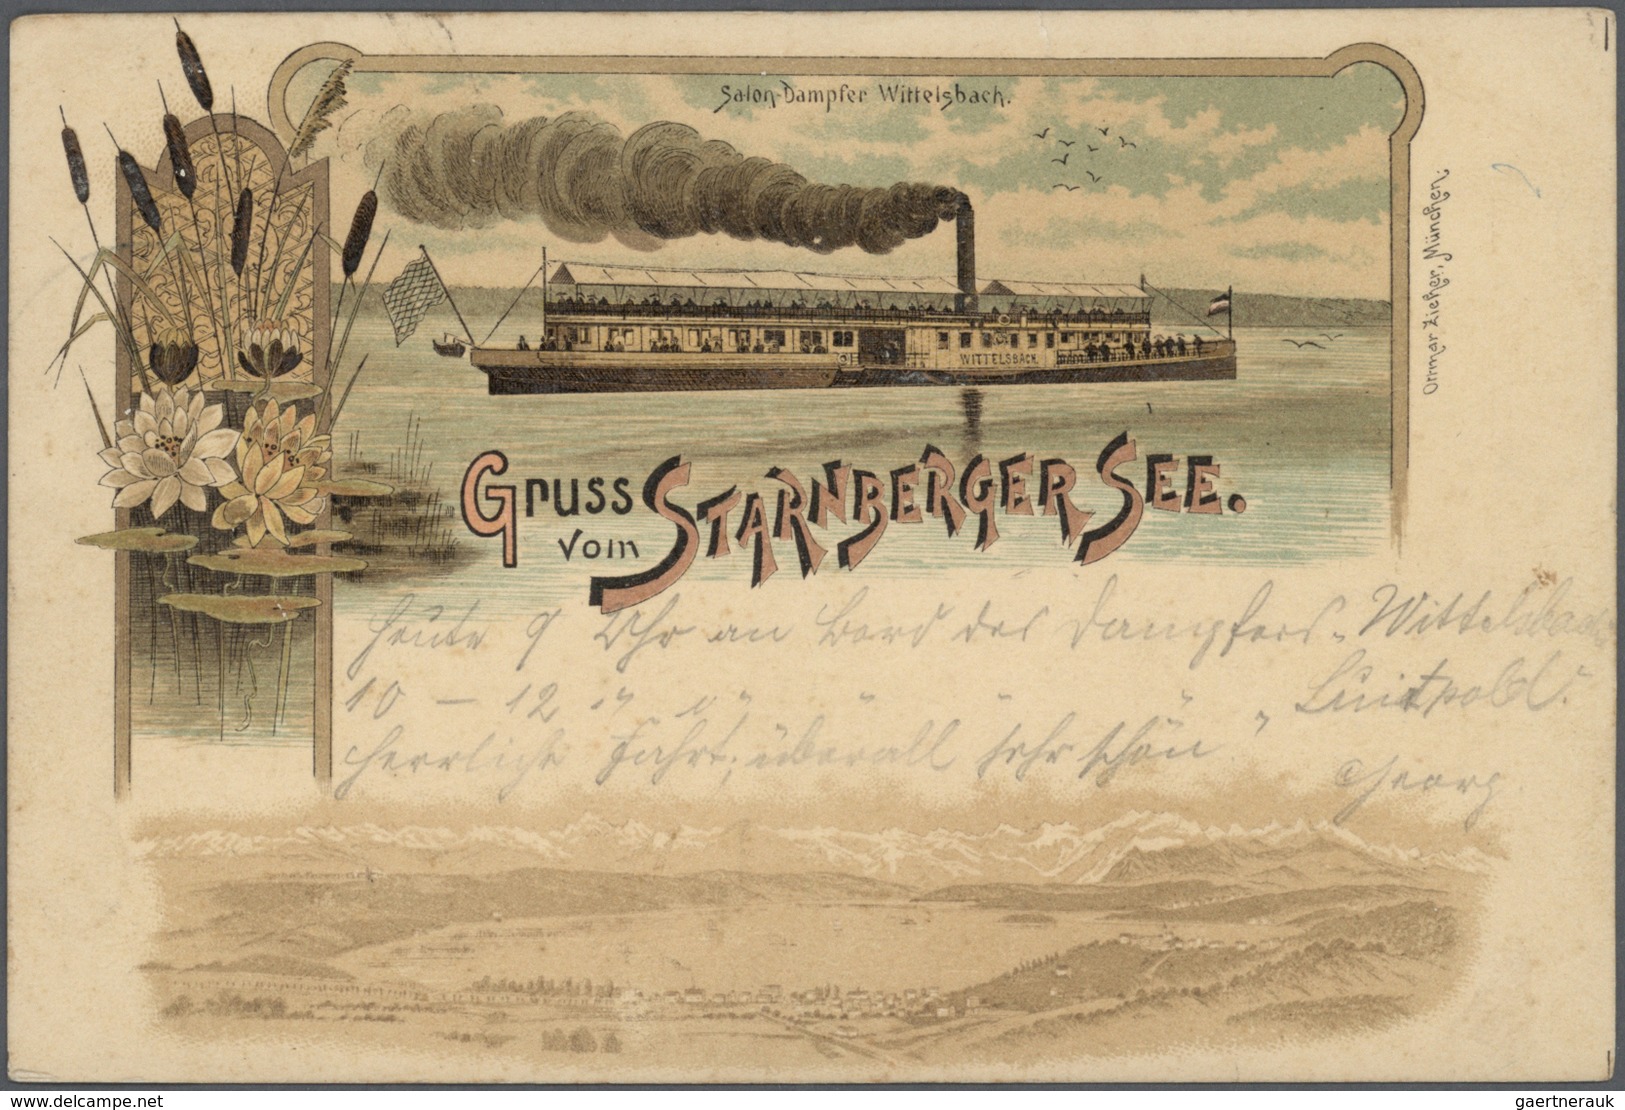 Schiffspost Deutschland: ab 1896 Partie Schiffahrt auf der Elbe, Donau, Rhein, sowie viele Starnberg